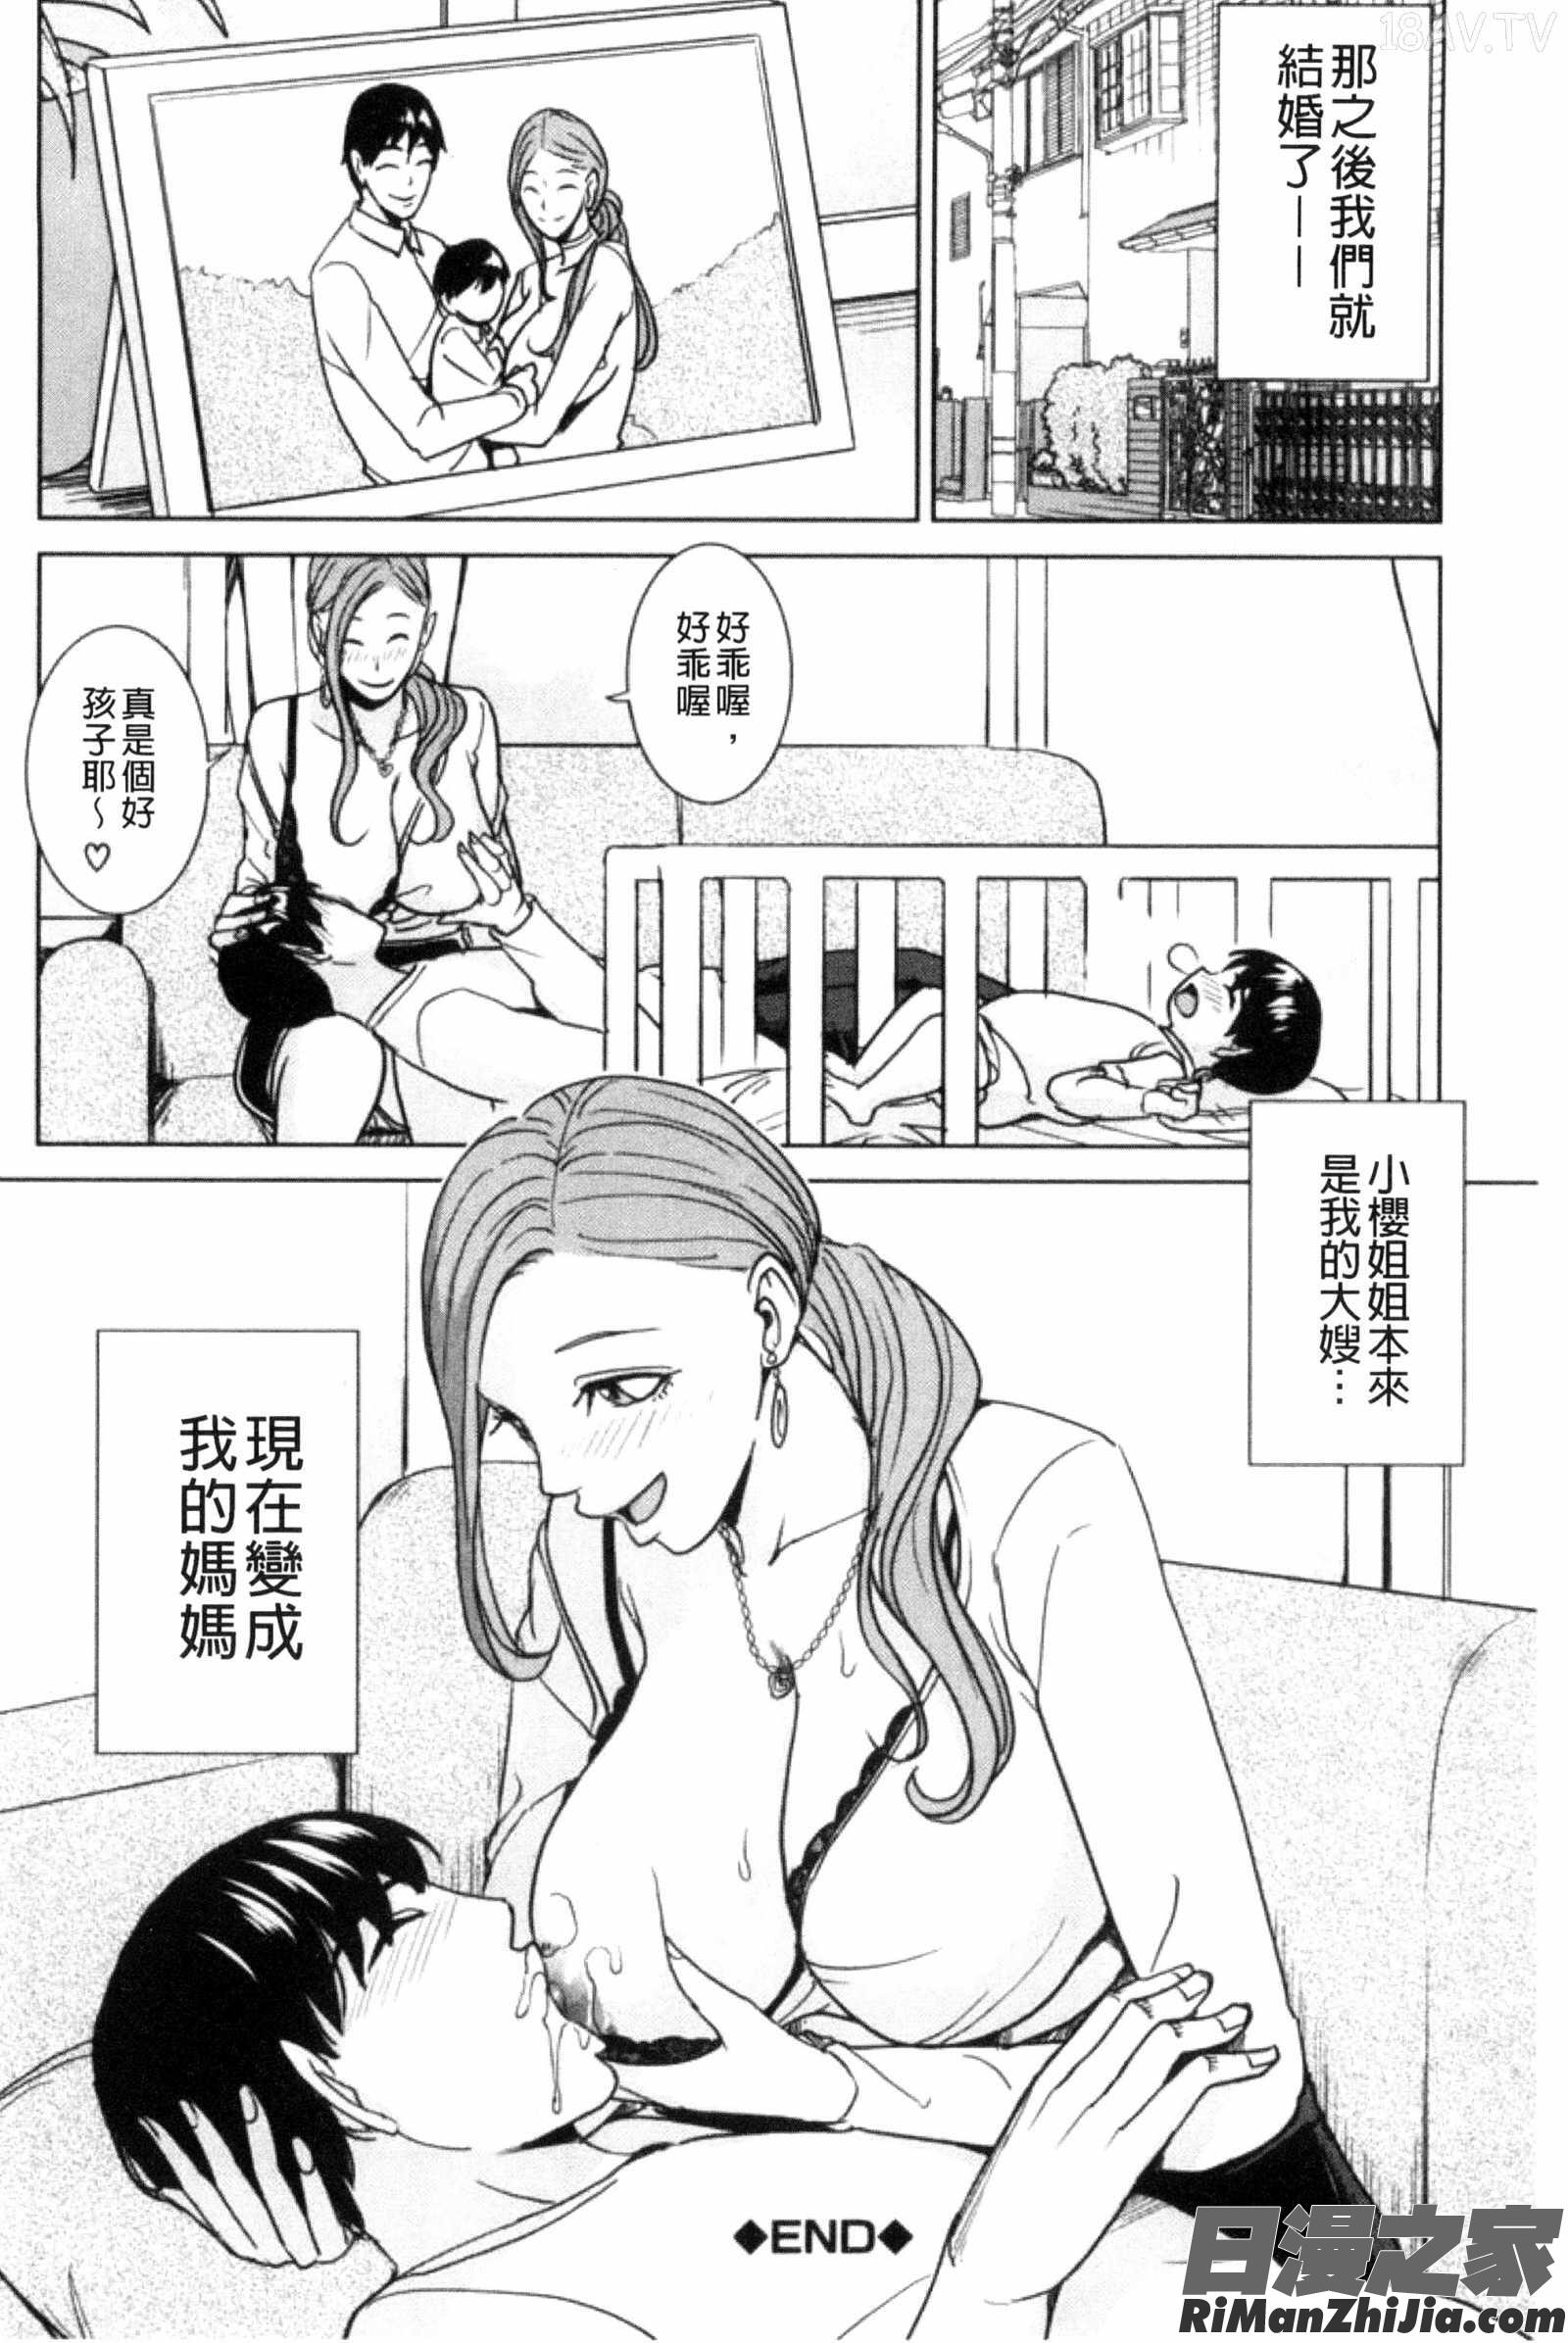 兄嫂淫蕩女性生活_兄嫁ビッチライフ漫画 免费阅读 整部漫画 95.jpg